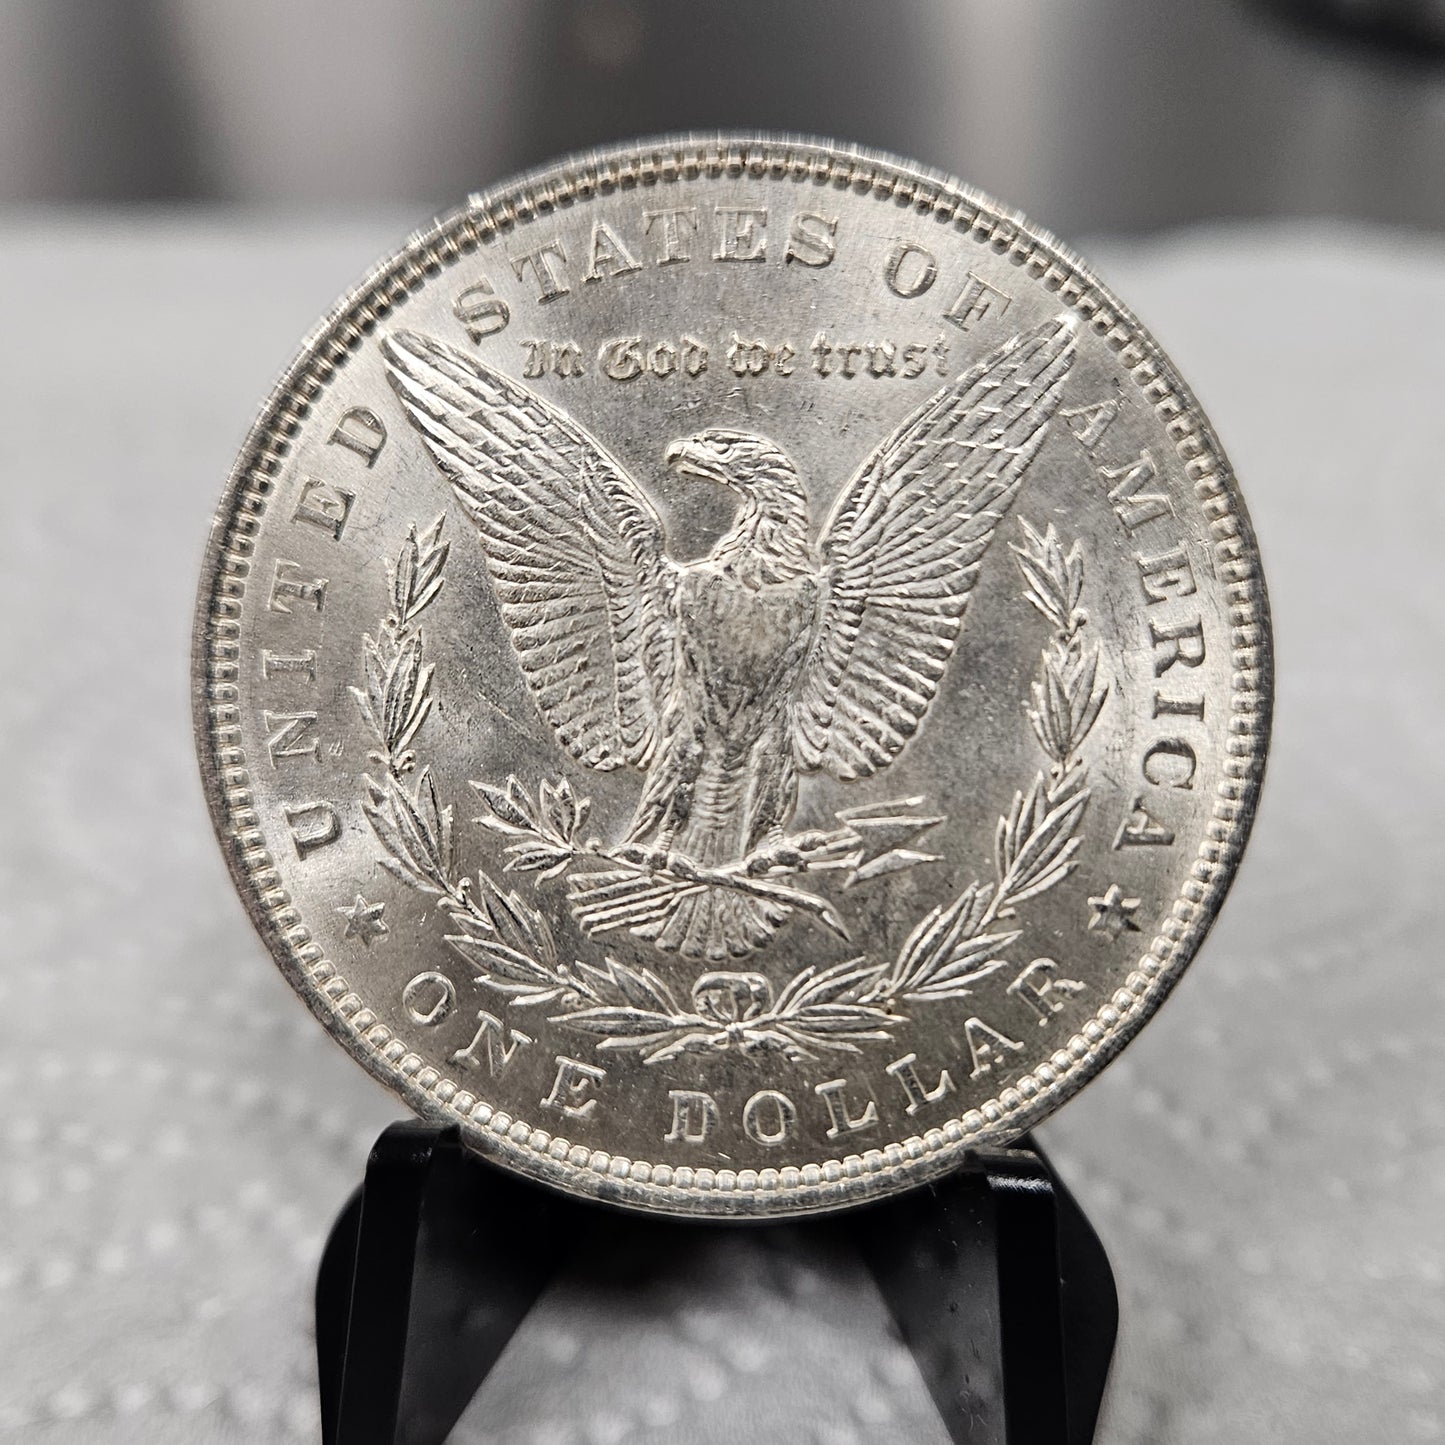 1896 Morgan Silver Dollar AU -117151-